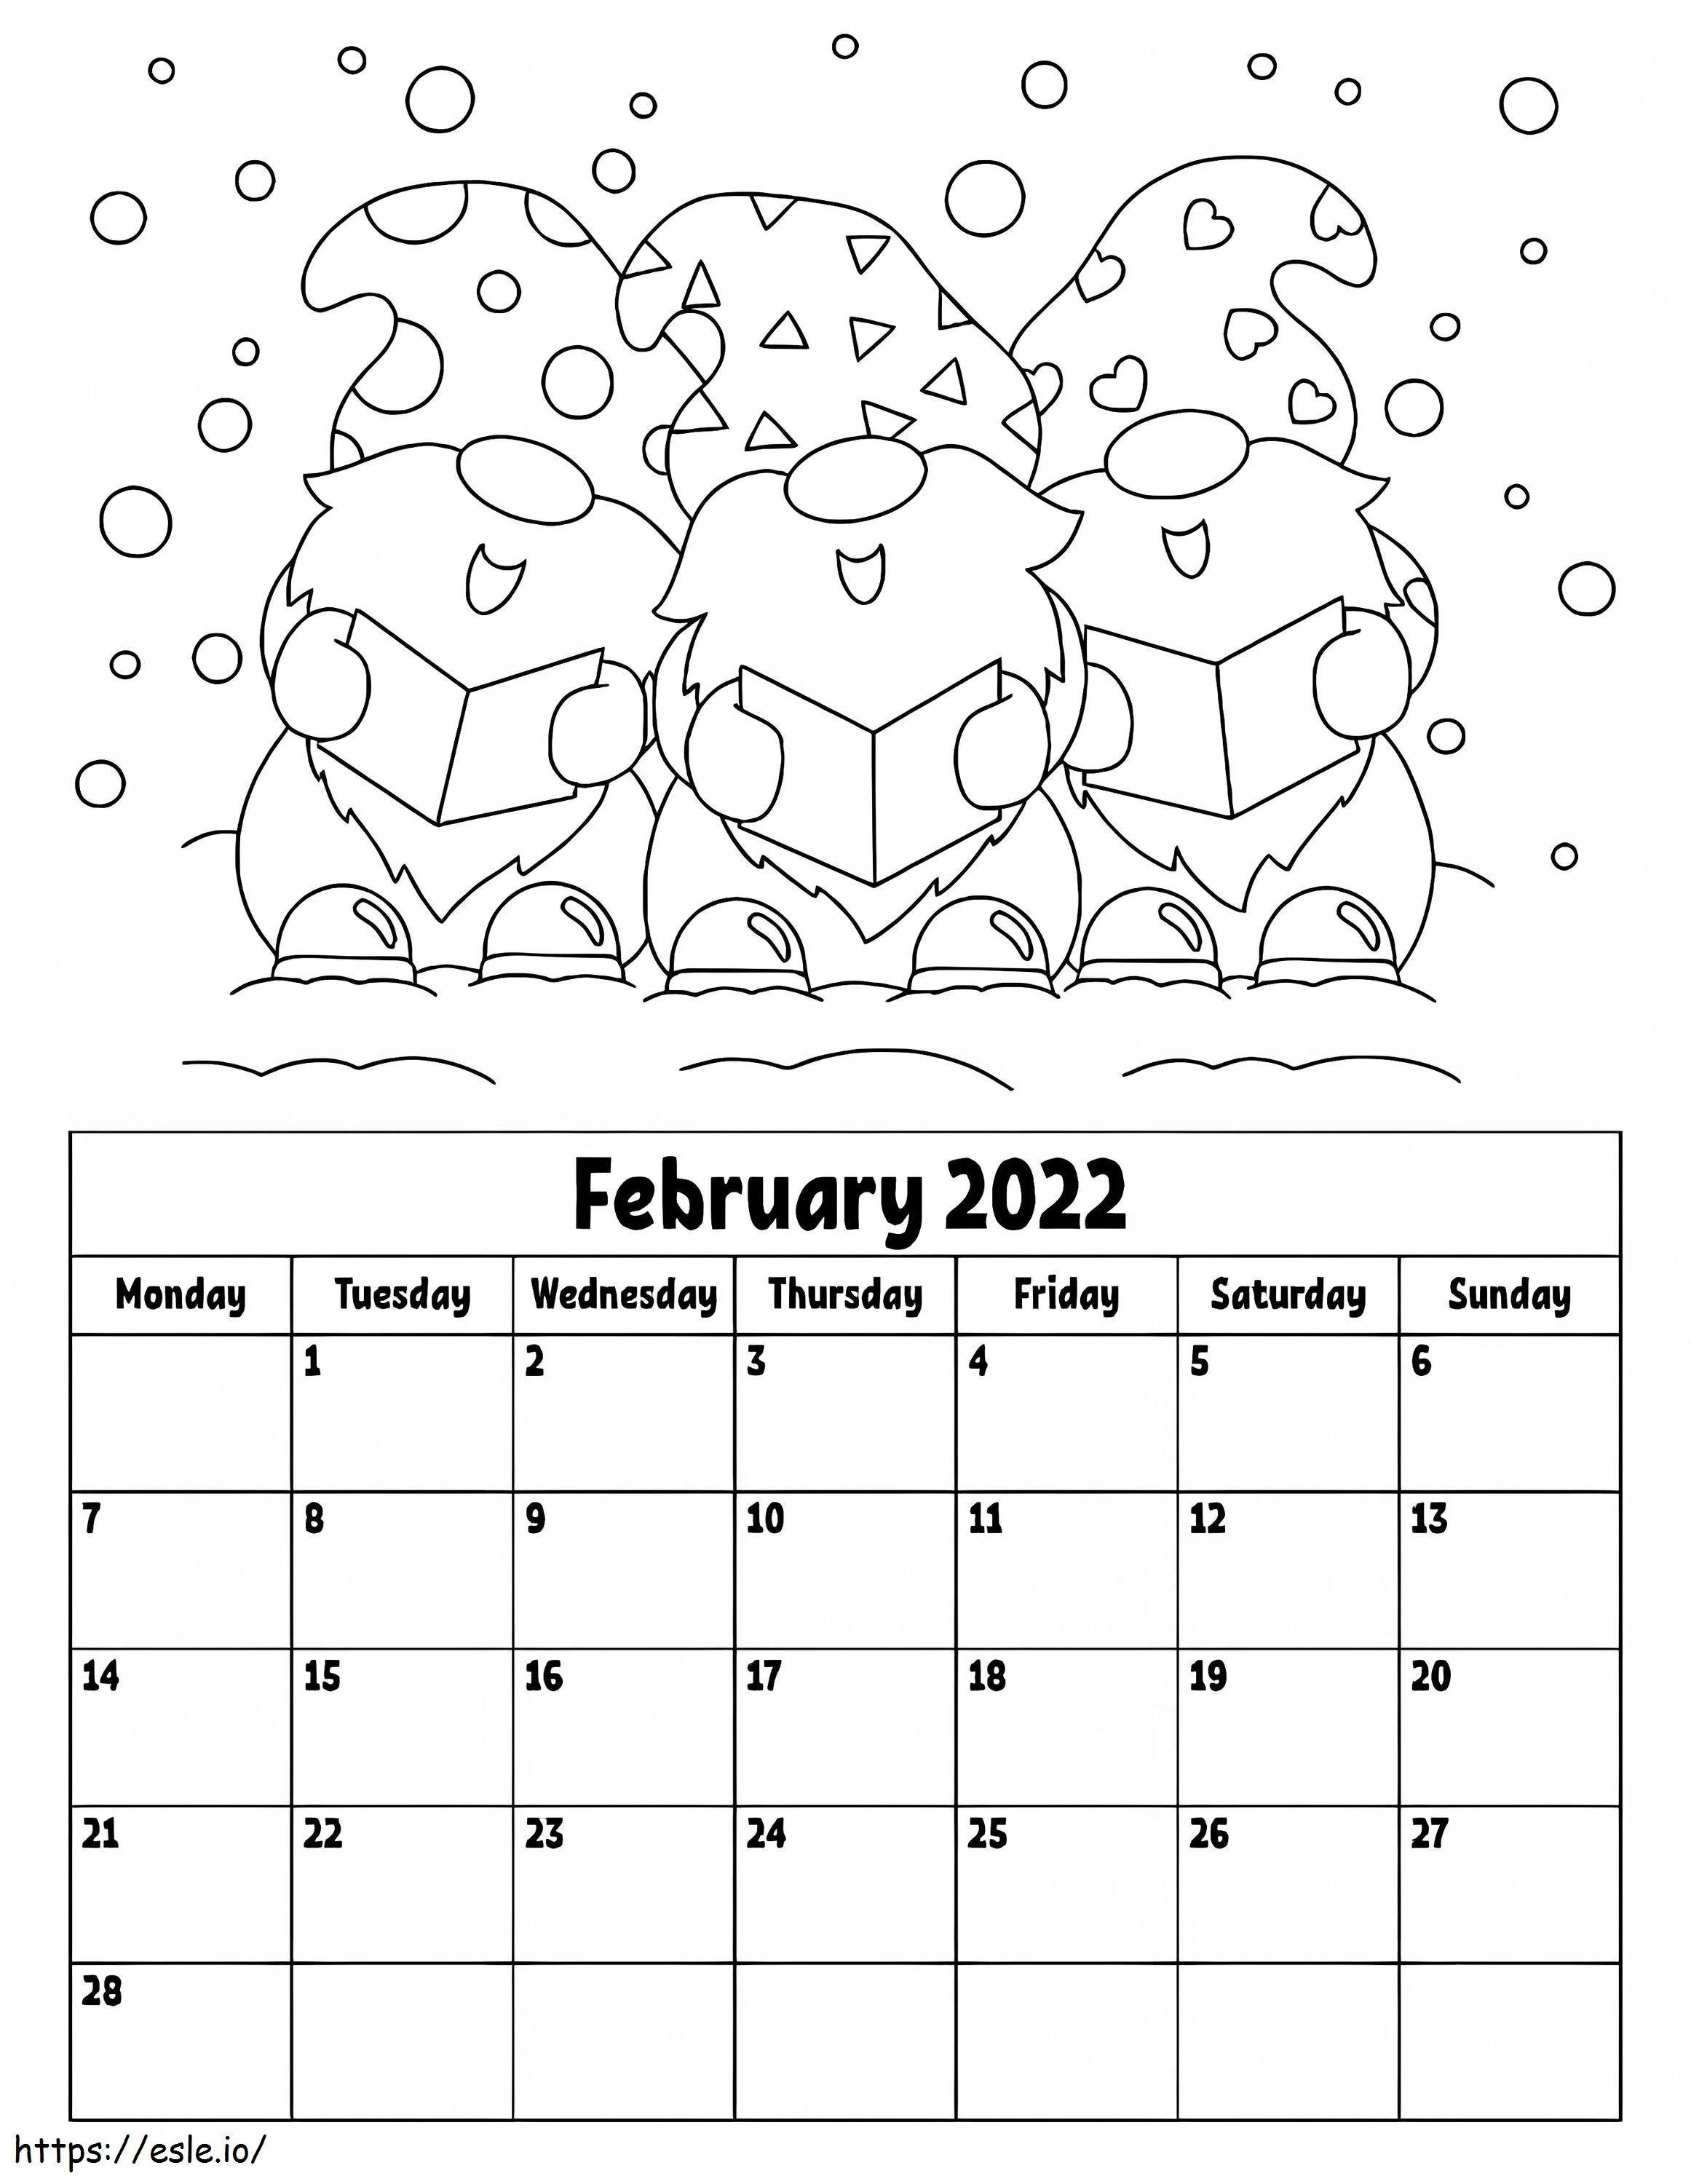 Kalendarz luty 2022 kolorowanka